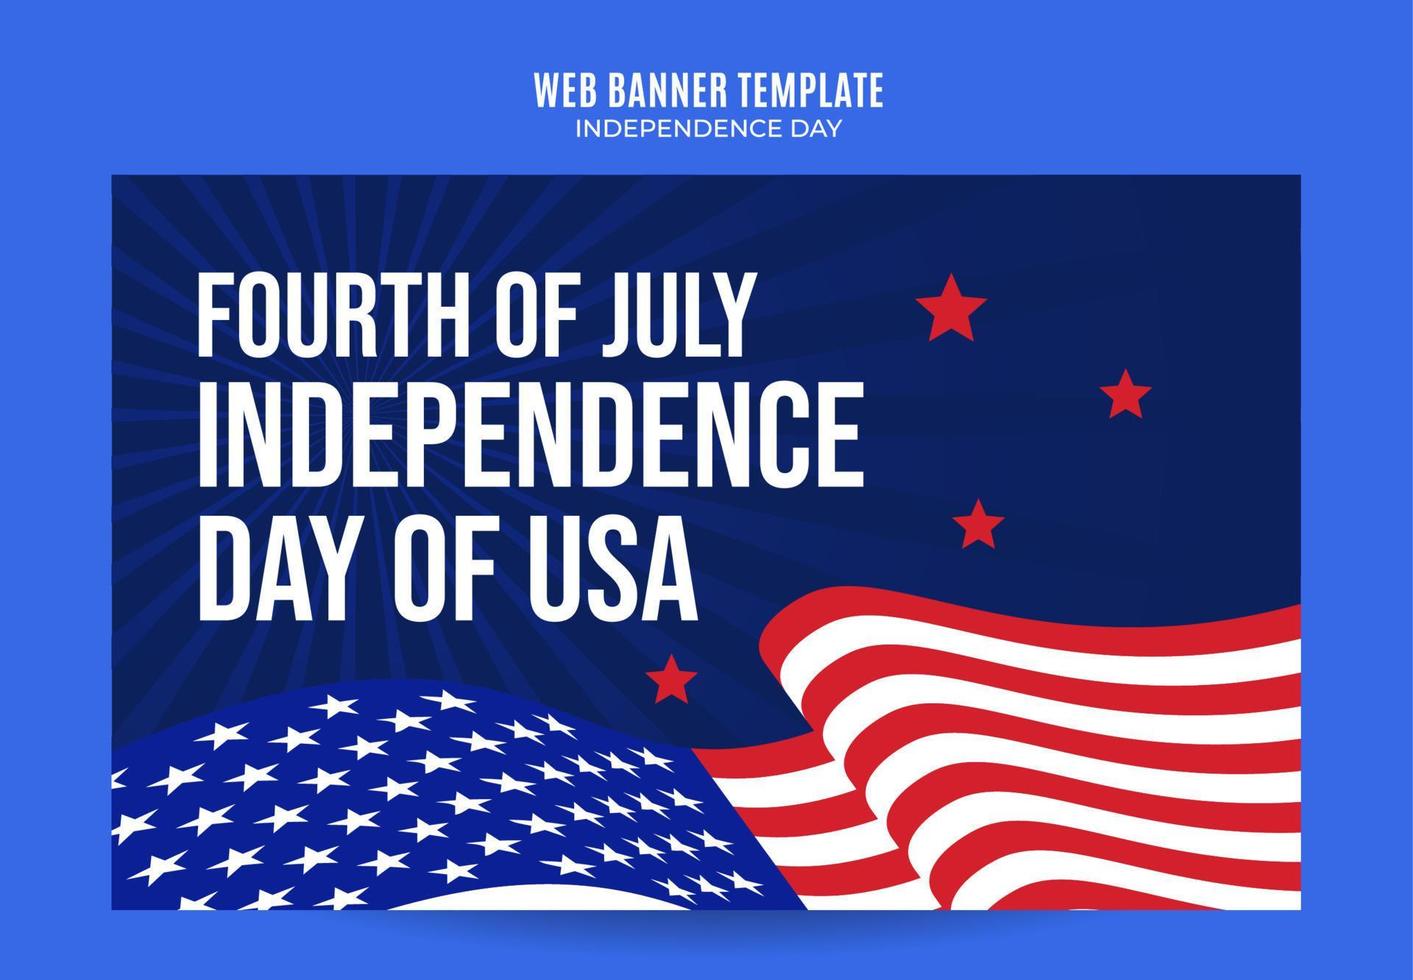 feliz 4 de julio: banner web del día de la independencia de EE. UU. Para afiches, carteles, áreas espaciales y antecedentes en las redes sociales vector